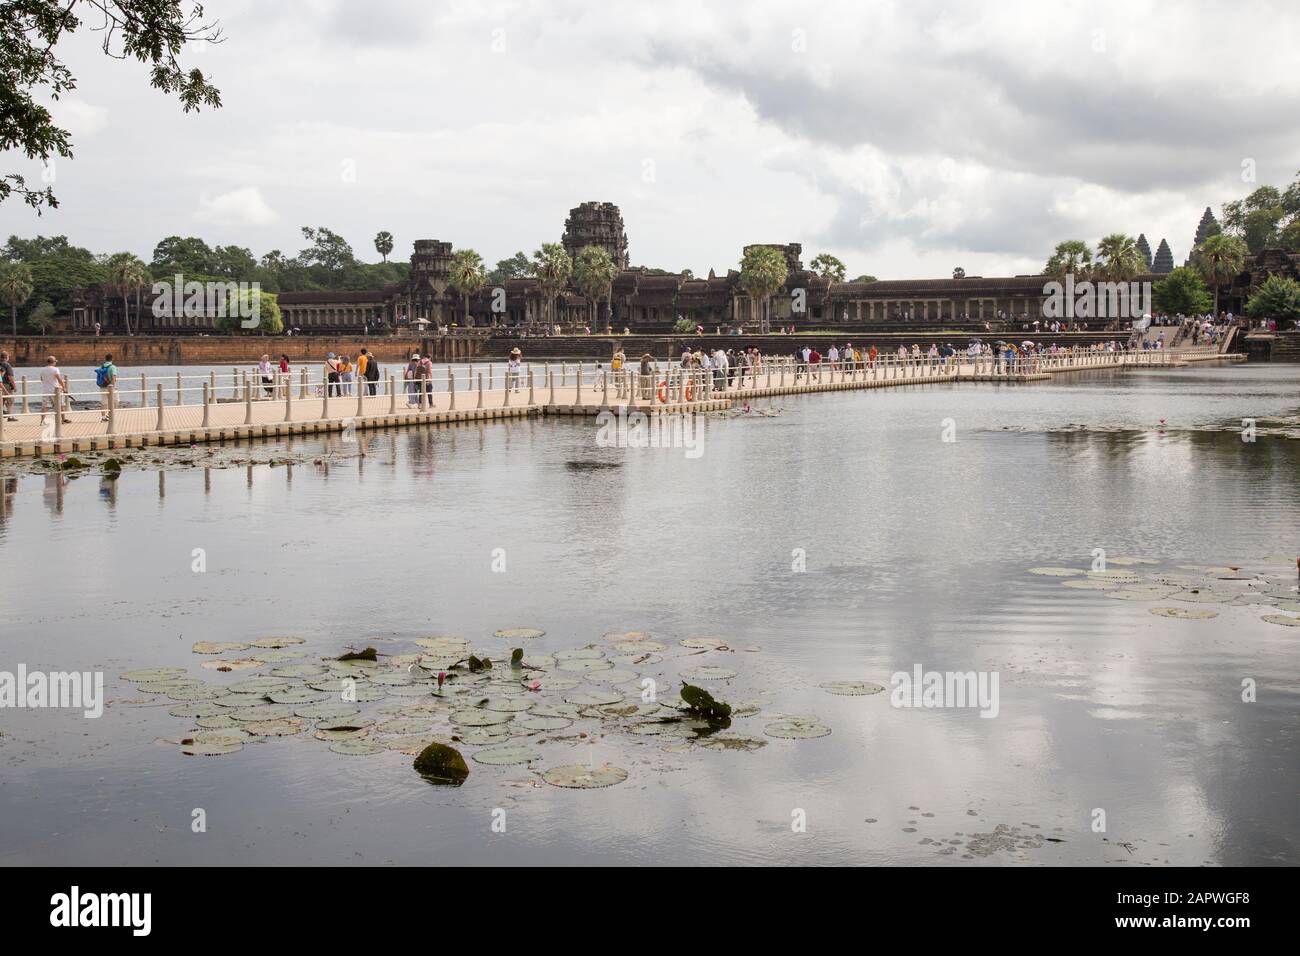 Visitors at main entrance of Angkor Wat during a cloudy morning Stock Photo